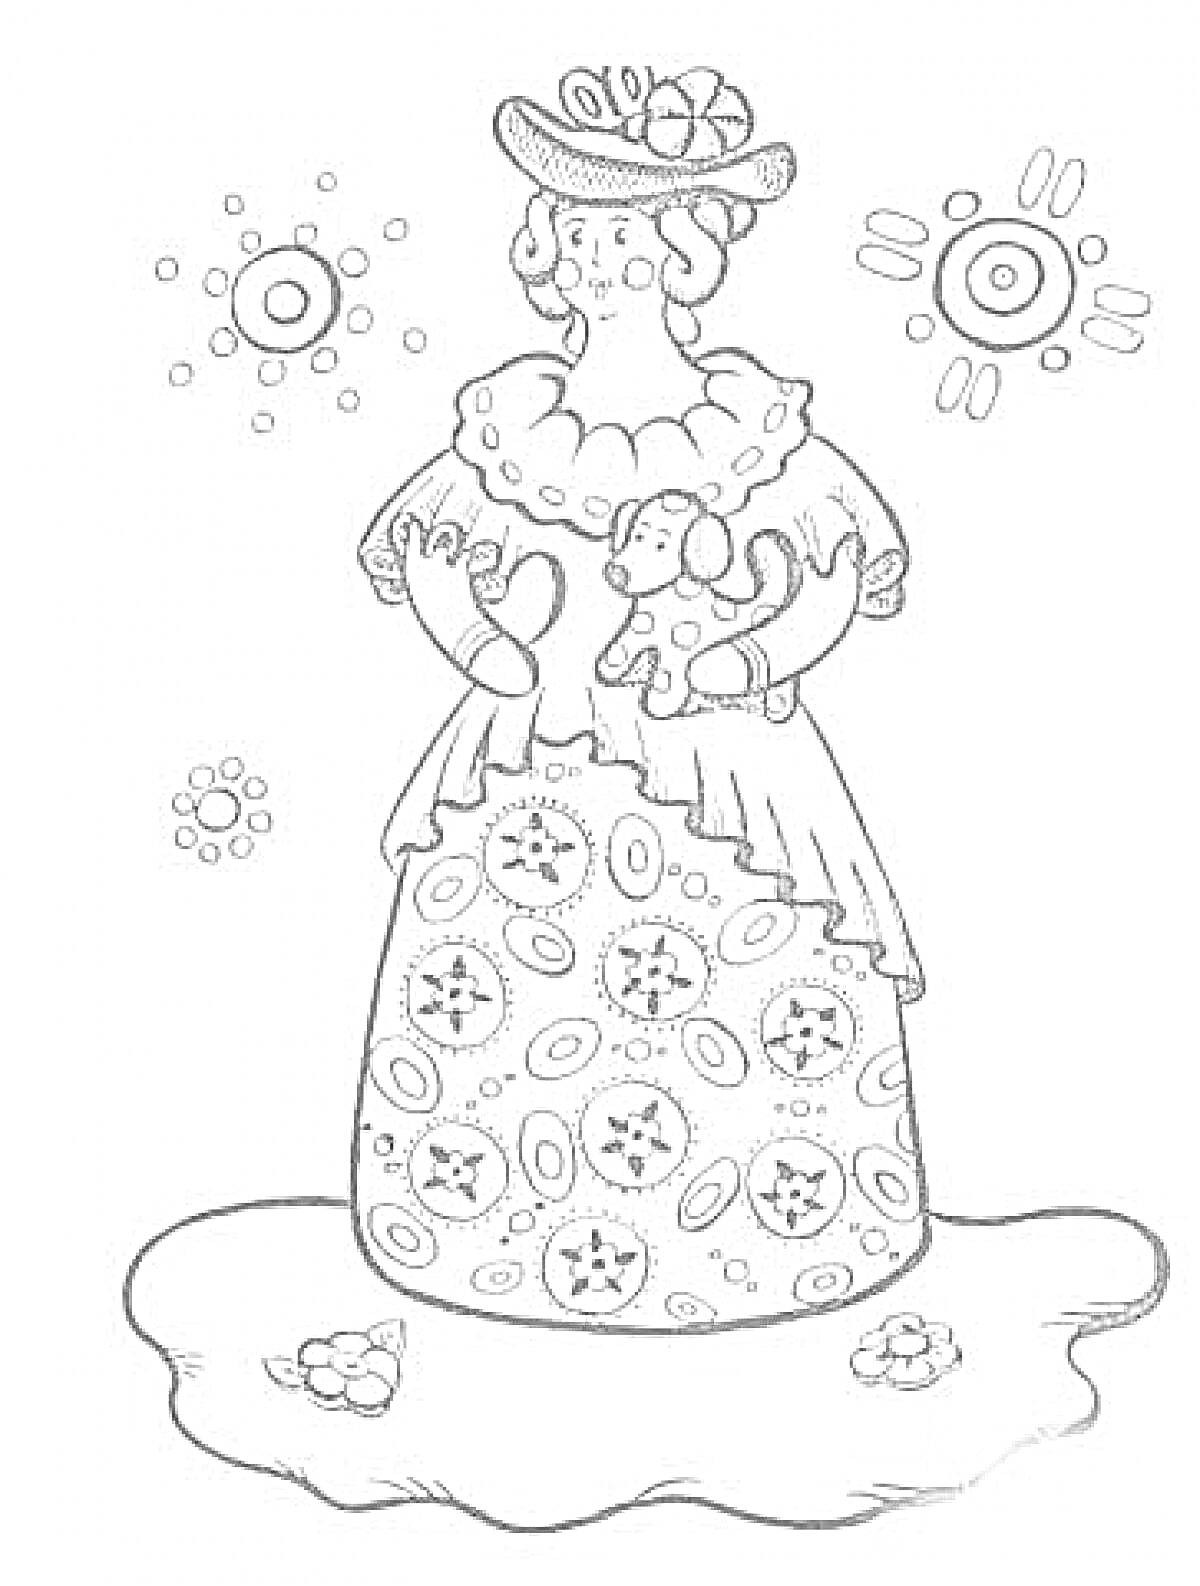 Дымковская игрушка - Женщина в шляпе с цветами на подоле платья, элементами кругов и узором на фоне, стоящая на земле